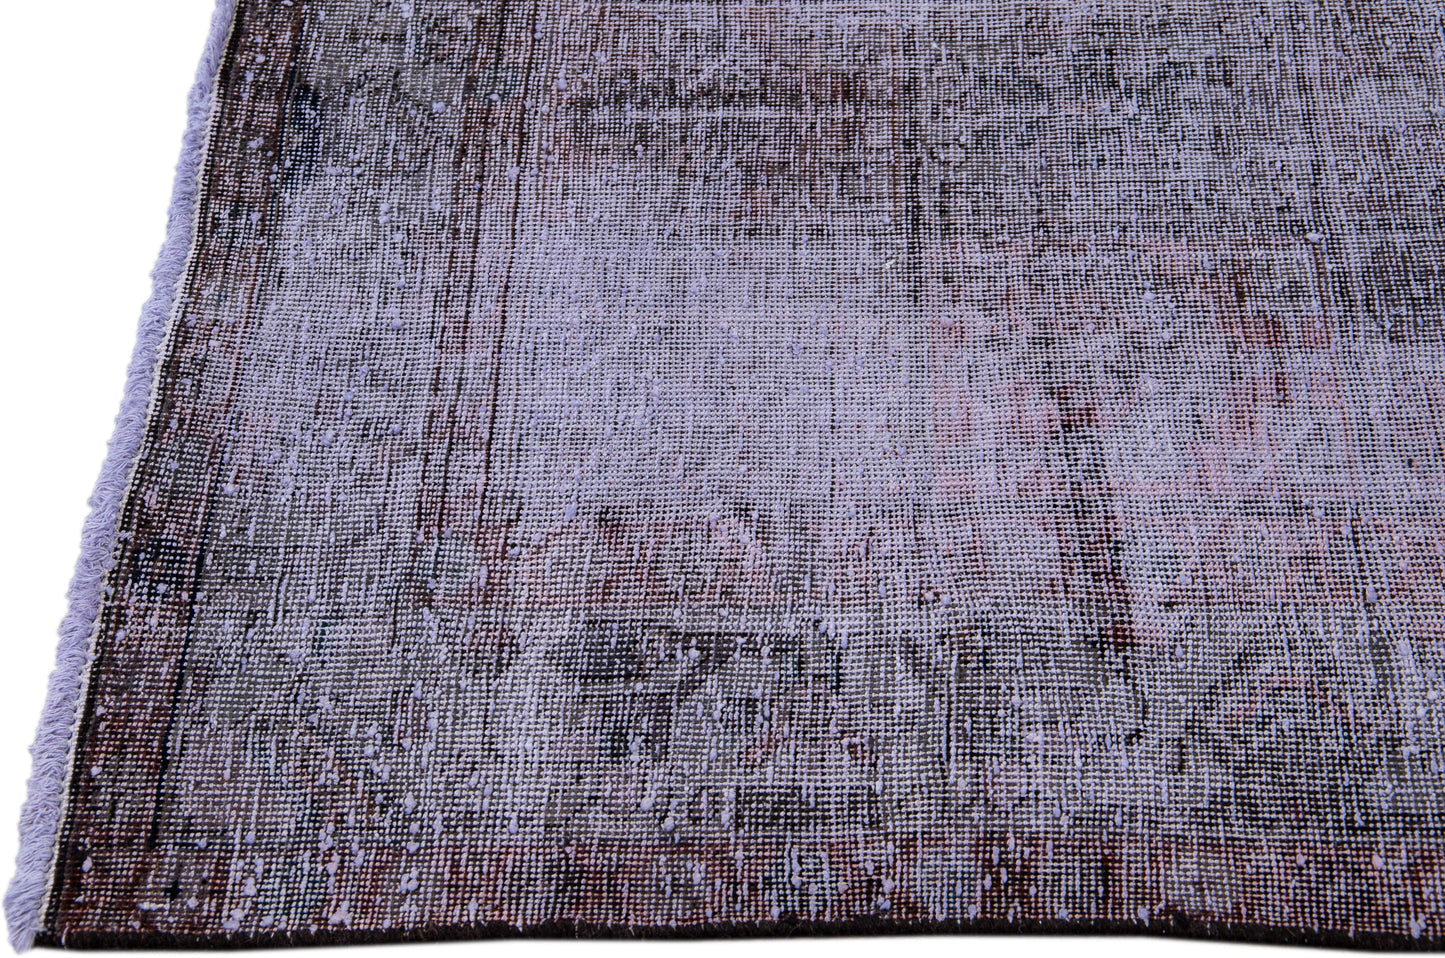 Vintage Persian Distressed Wool Rug - 5'2" x 8'10"